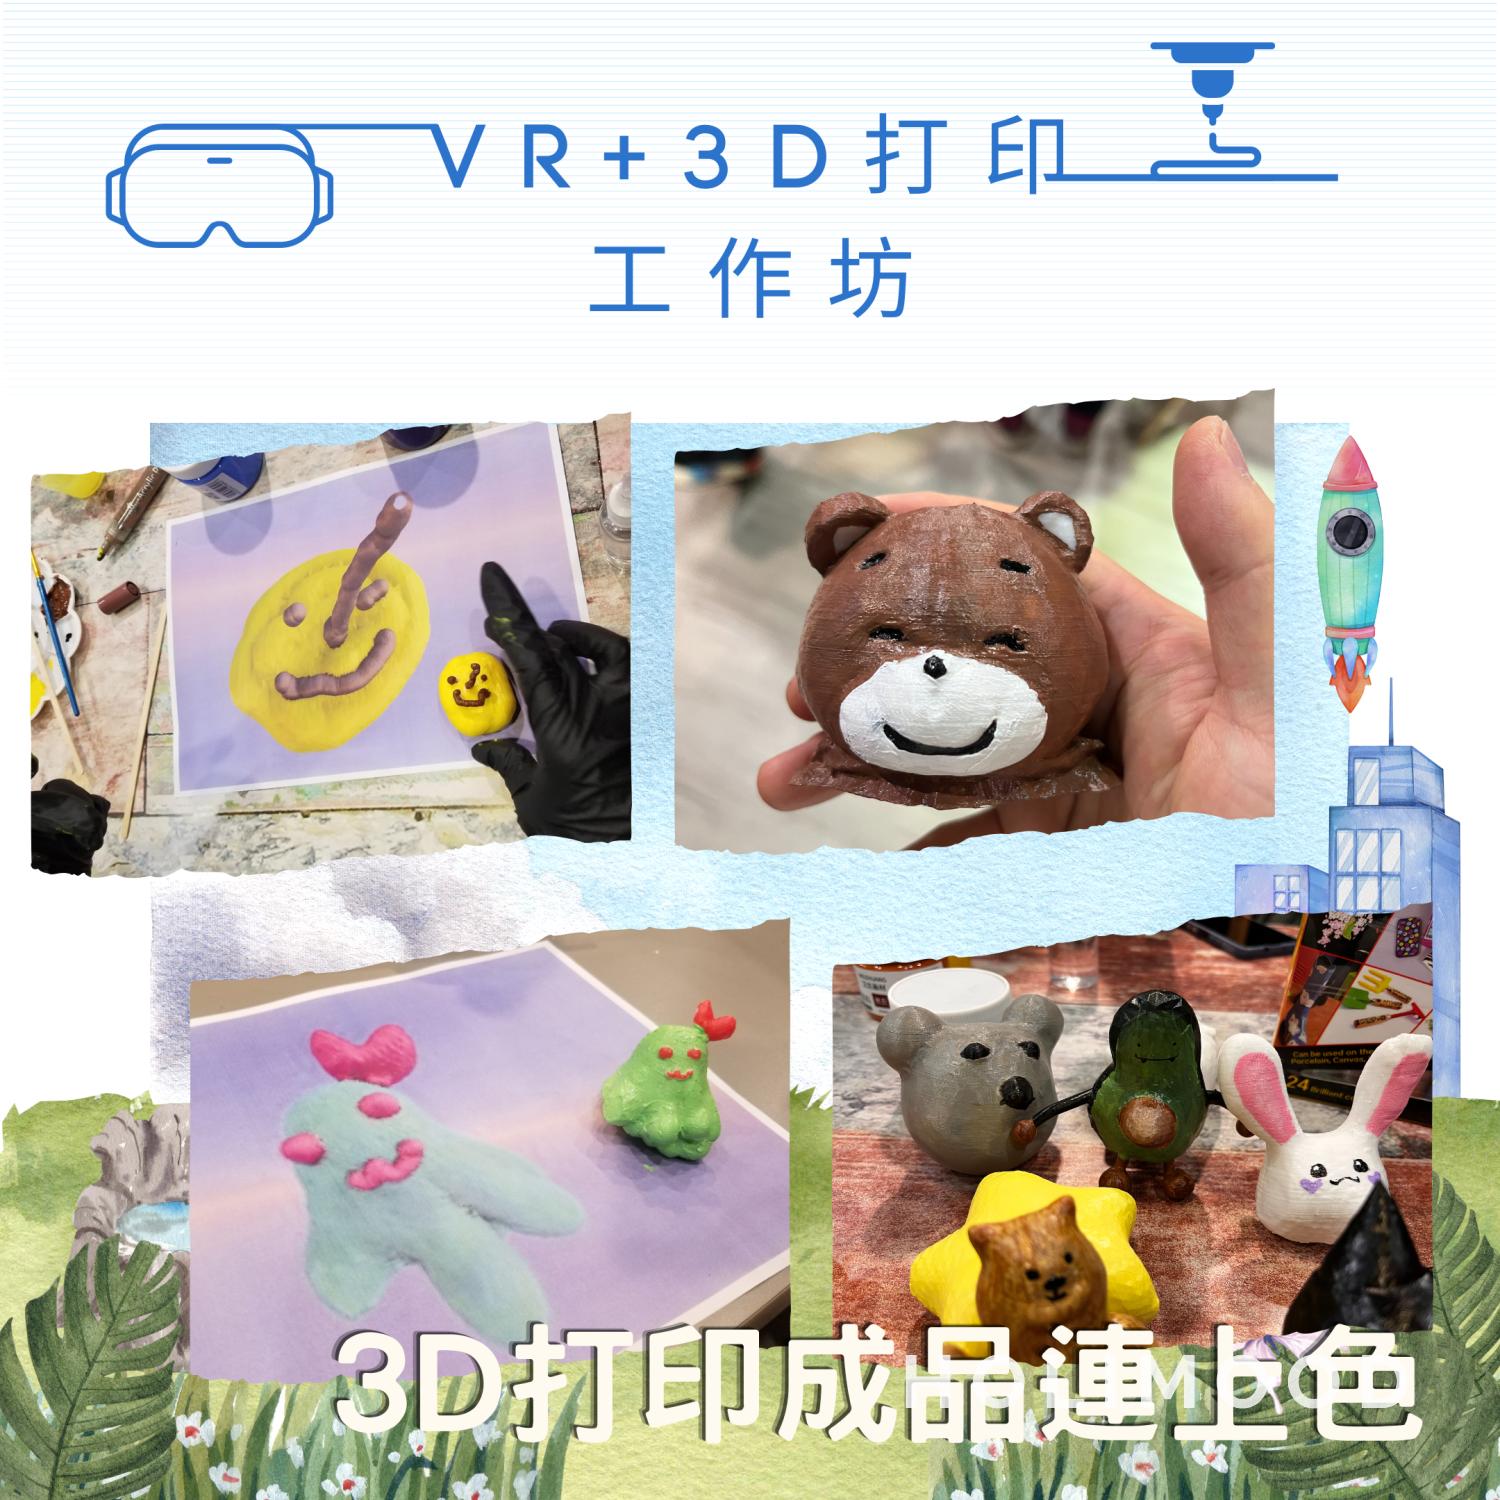 V-Owl Station VR Party VR+3D打印工作坊 3